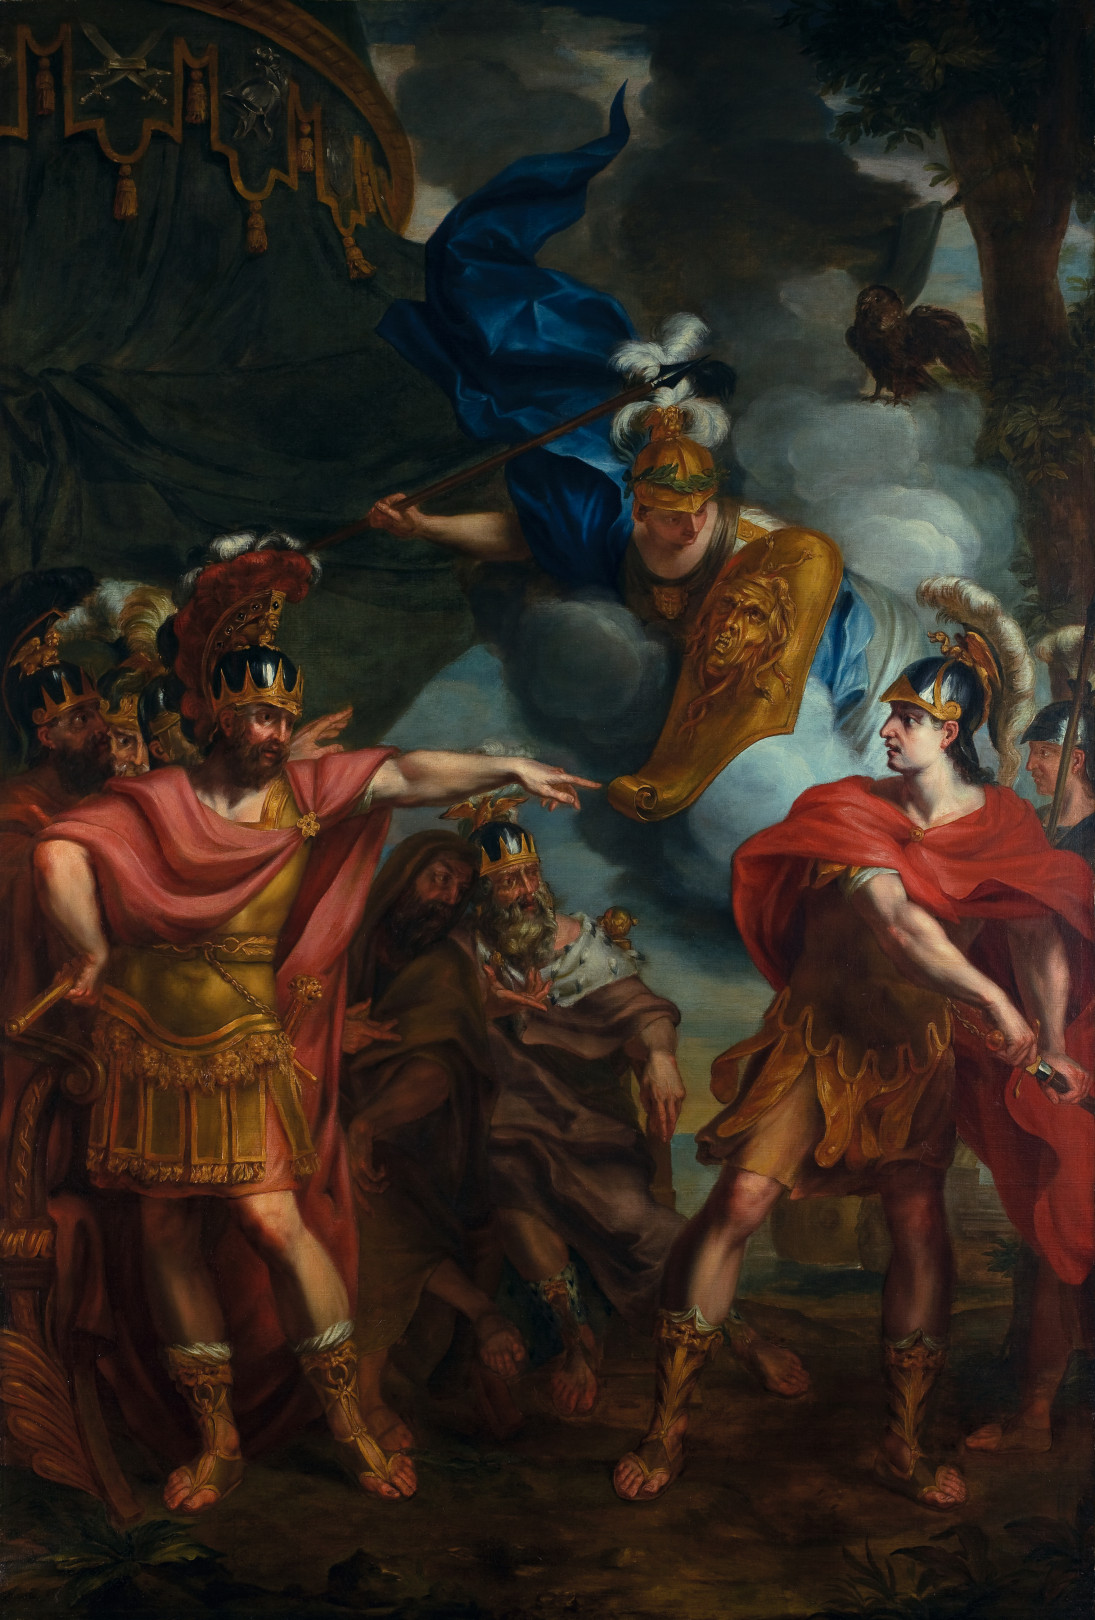 『アキレスとアガメムノンの口論』 エラルート・デ・ライレッセ (1640-1711)、ベルギー、油絵・キャンバス、 H 3000mm x W 2140mm